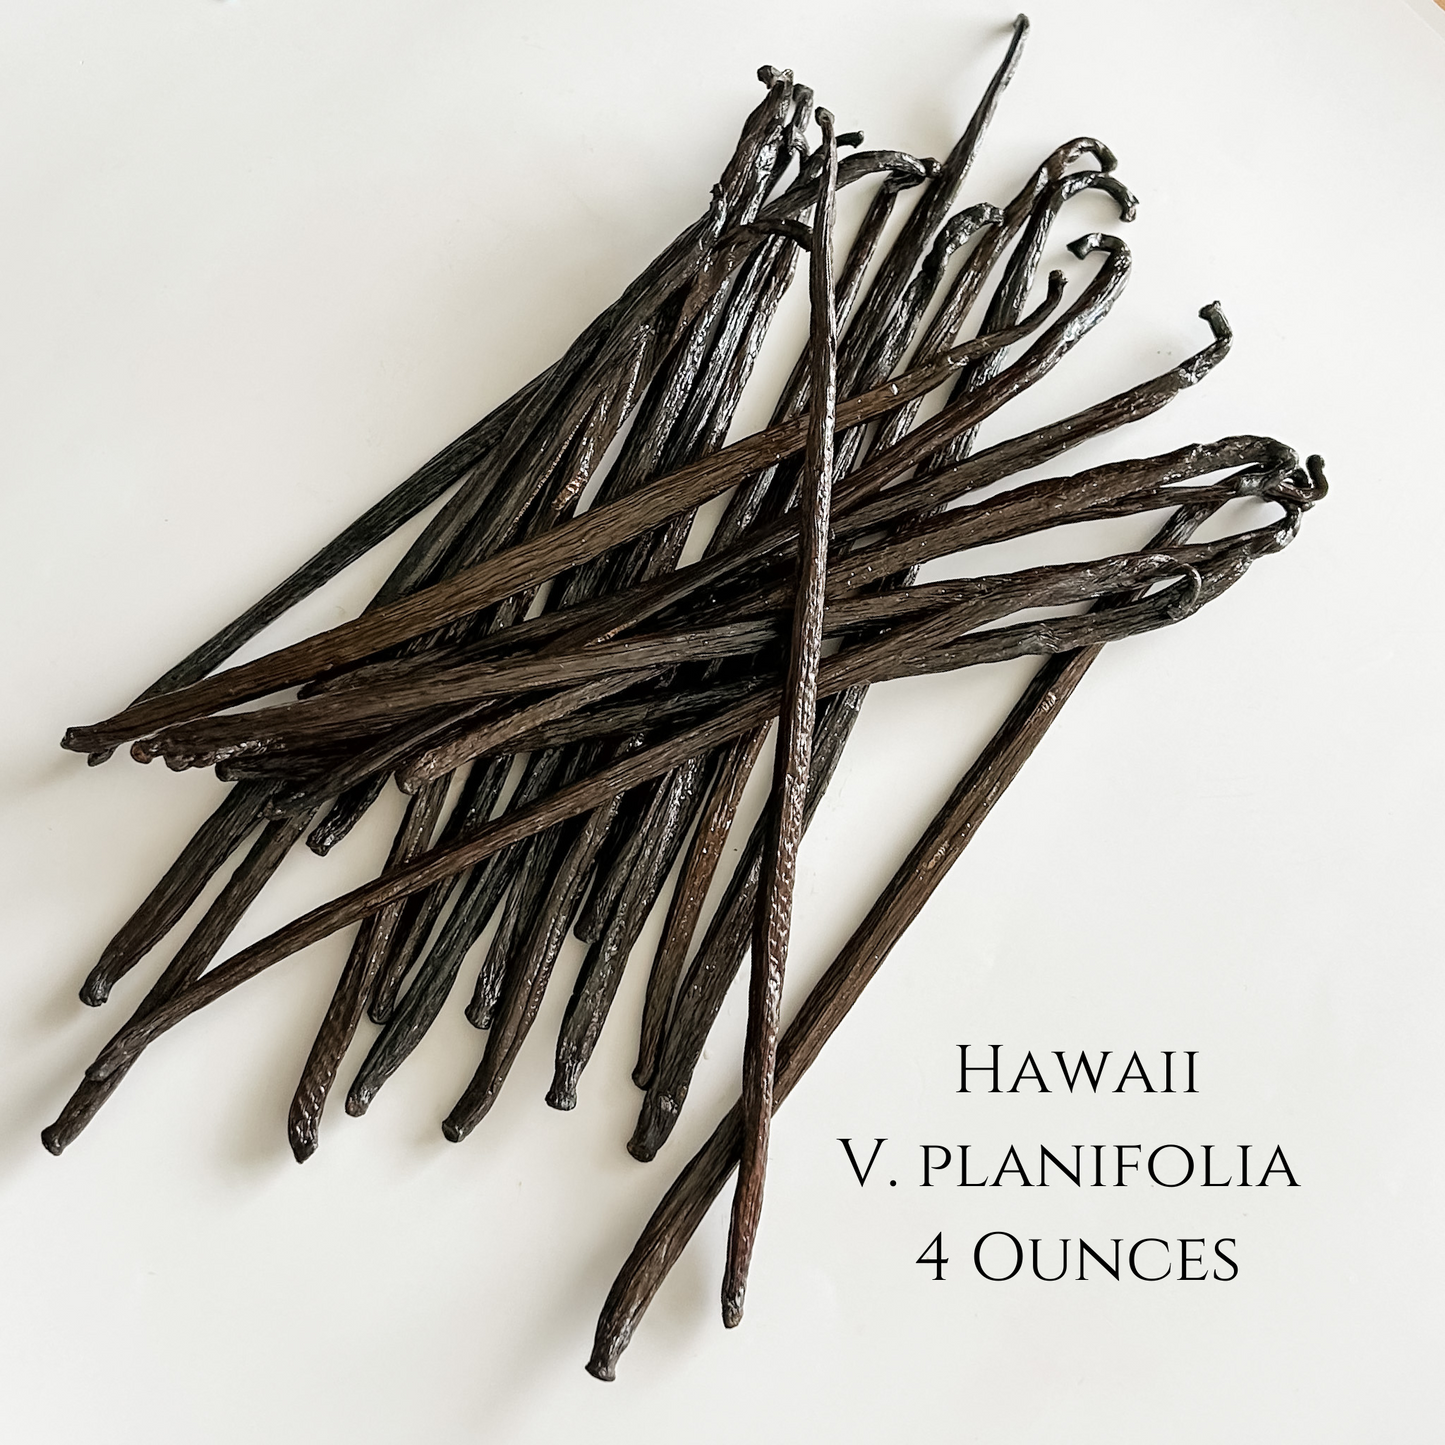 Hawaii V. planifolia Vanilla Beans